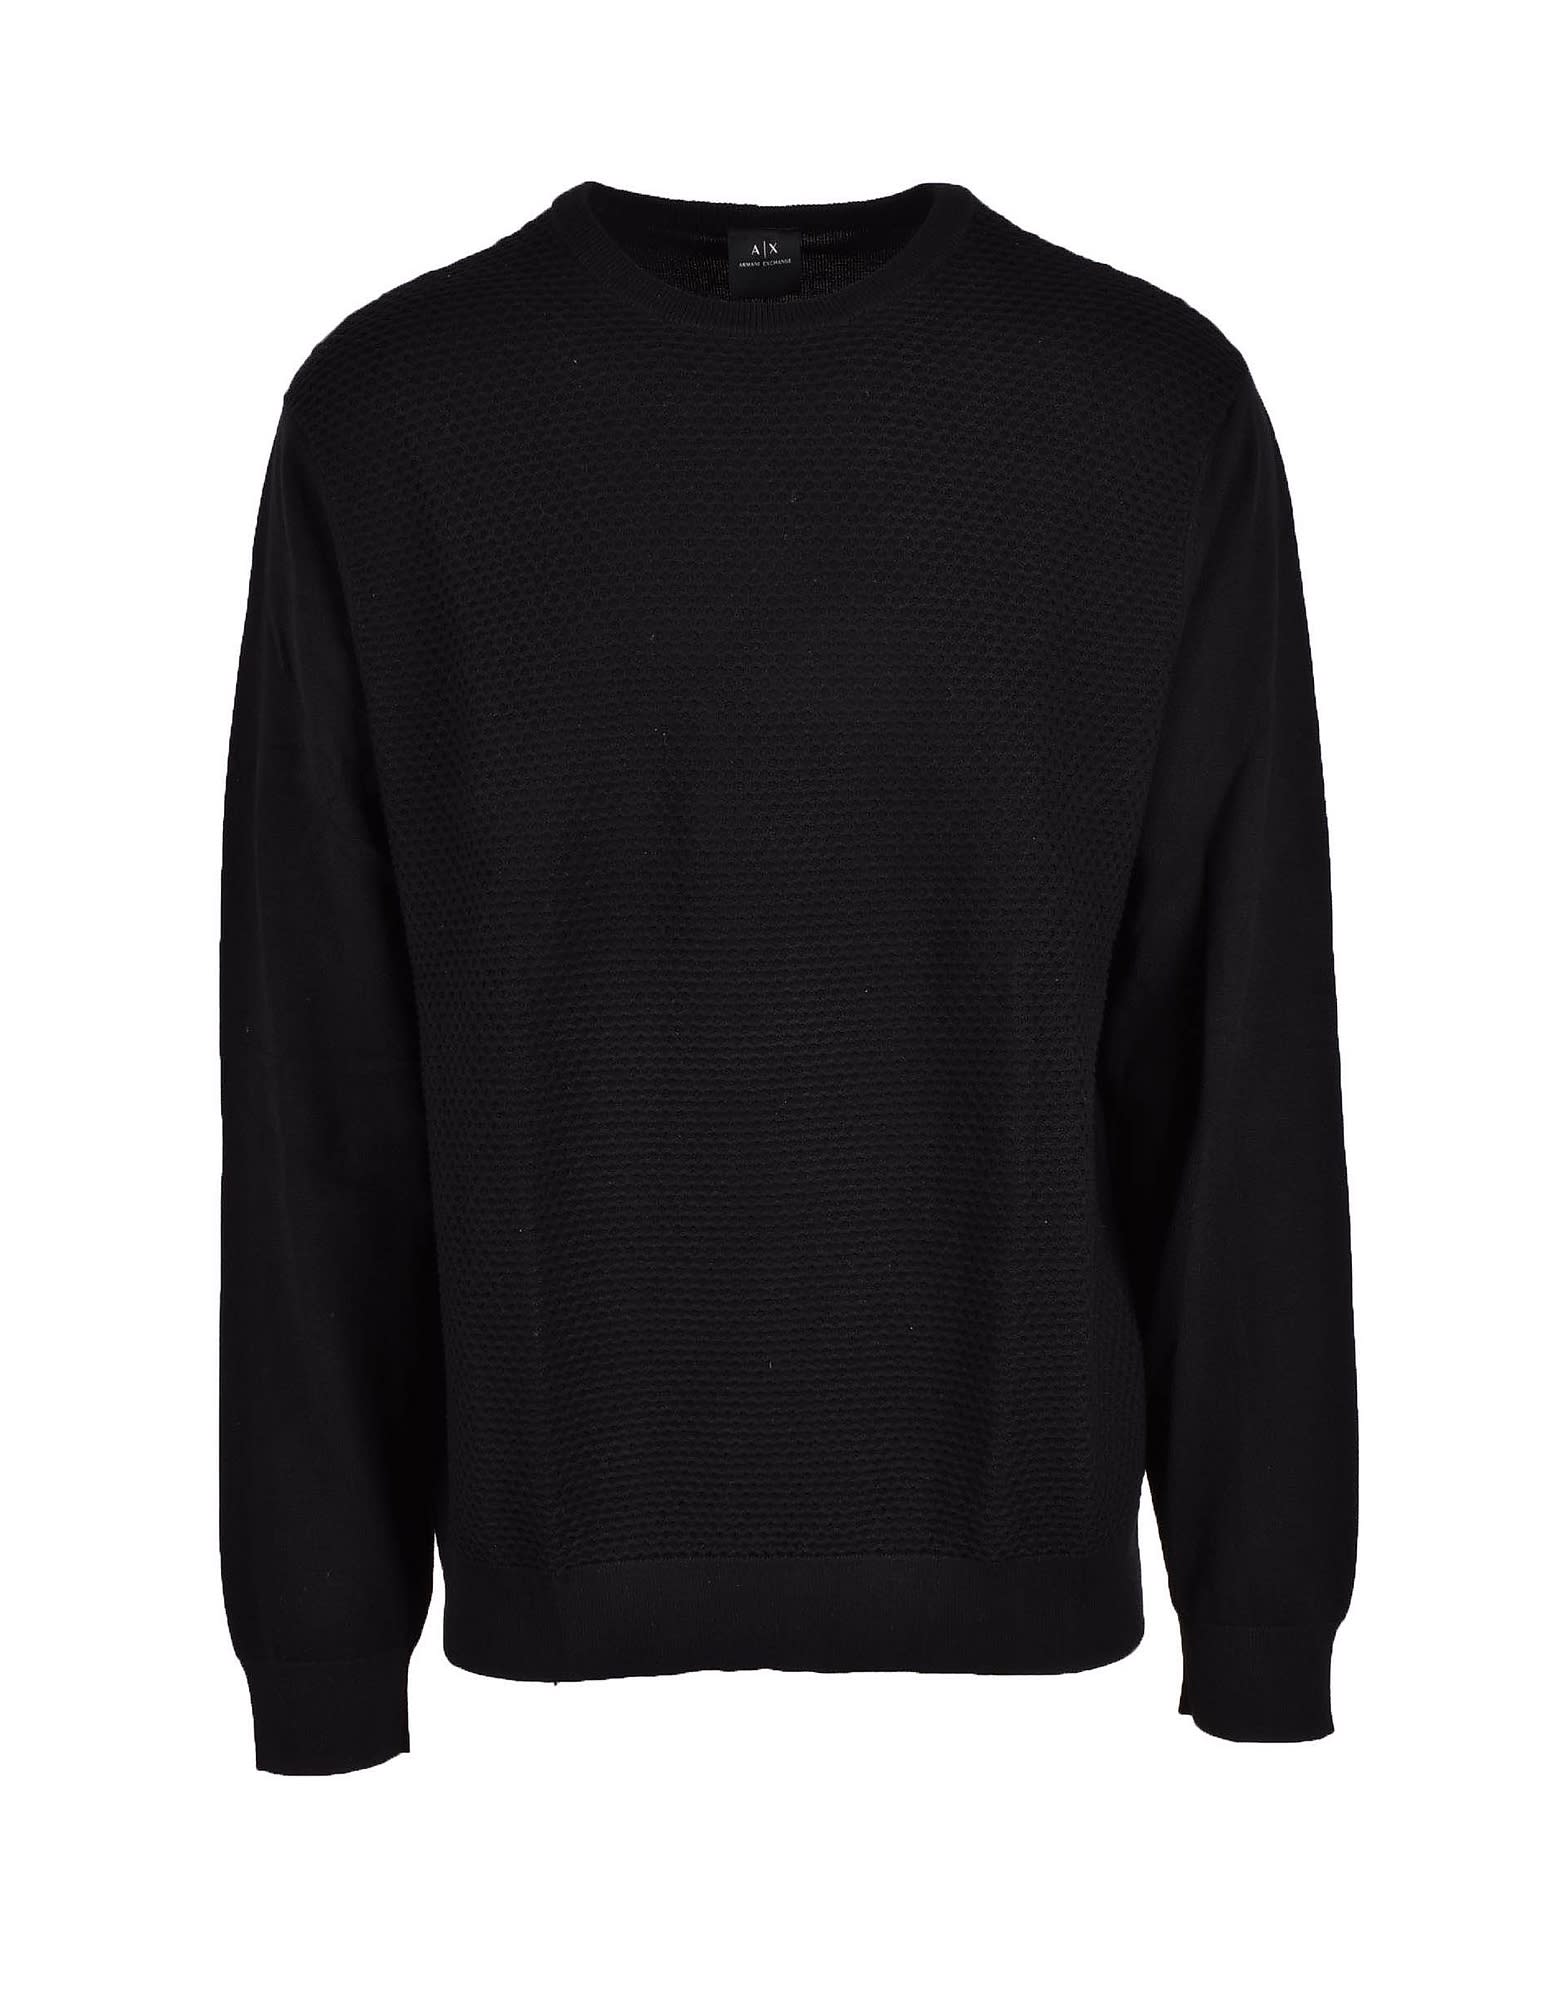 Armani Collezioni Mens Black Sweater